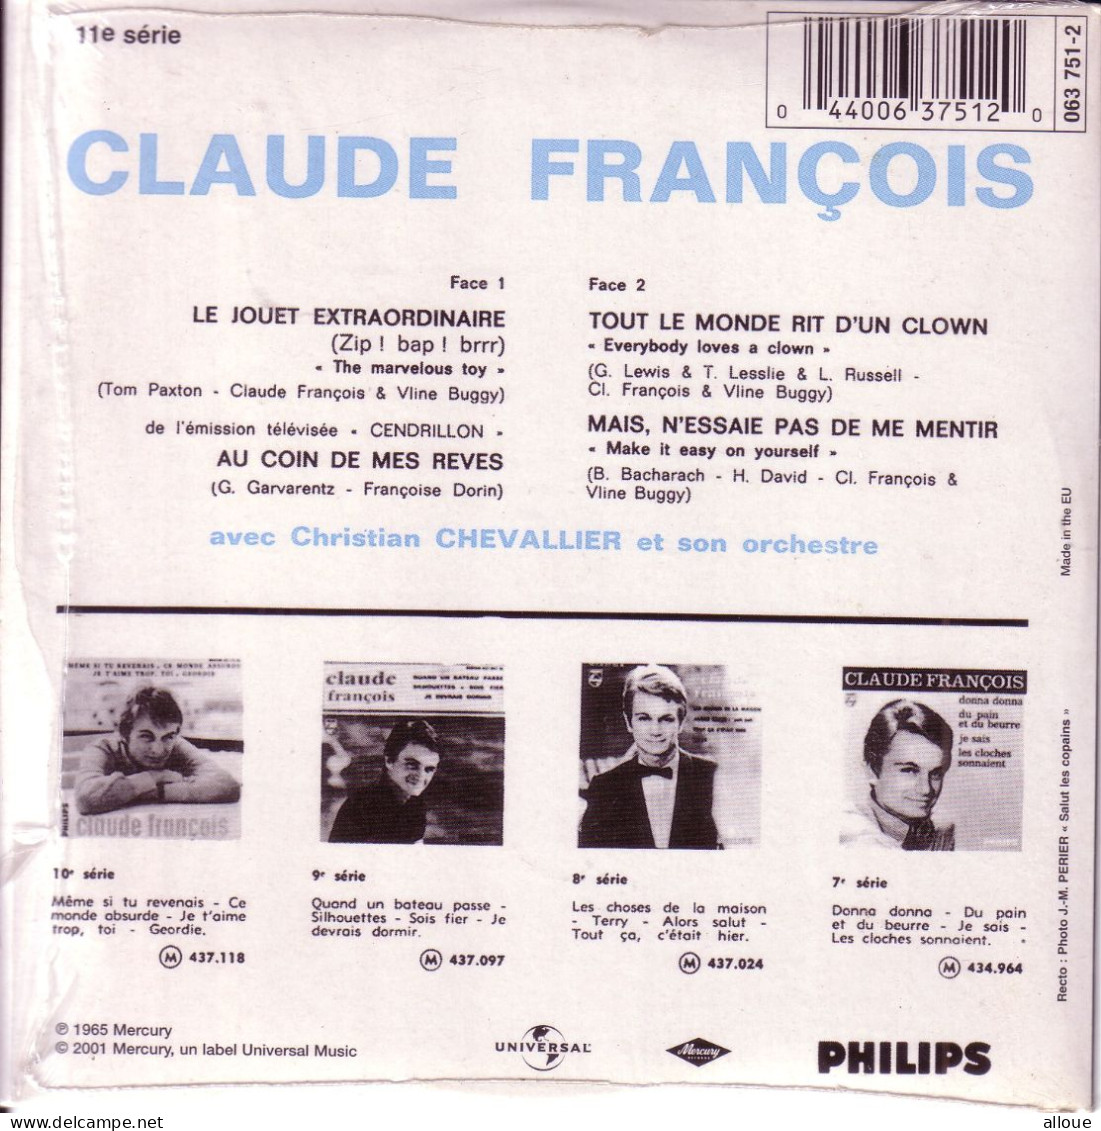 CLAUDE FRANCOIS CD EP LE JOUET EXTRAORDINAIRE + 3 - Altri - Francese